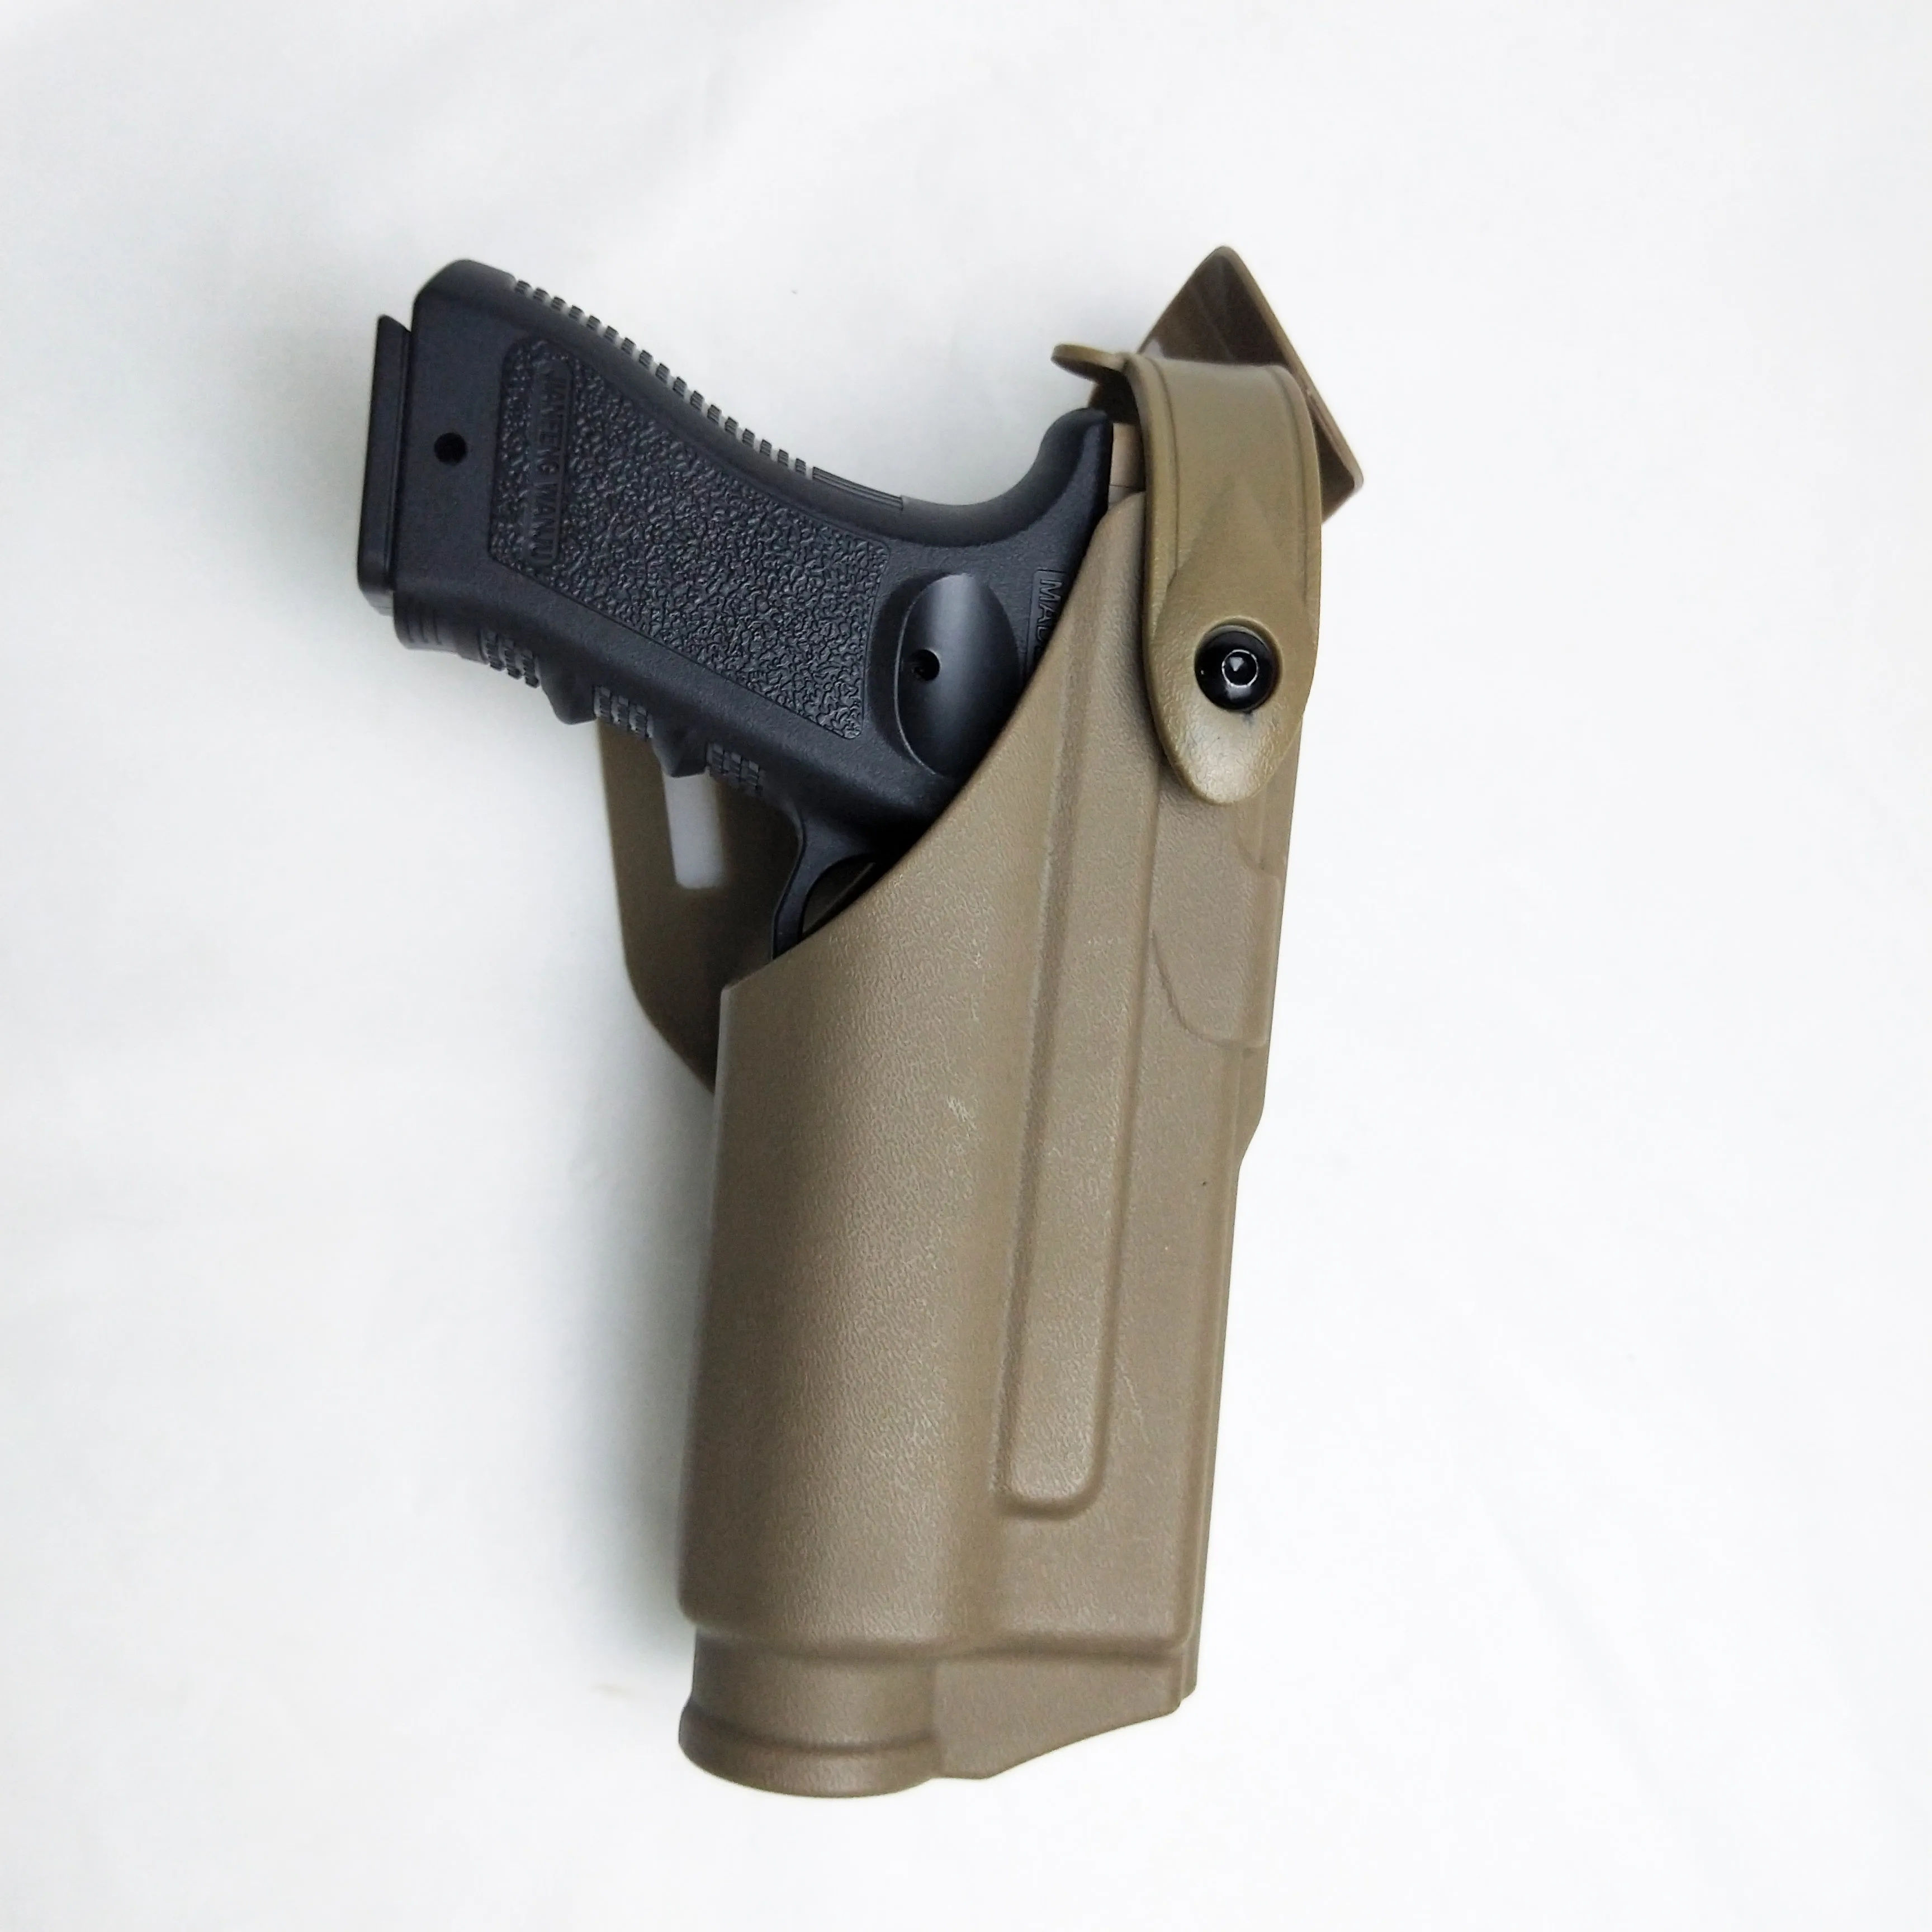 

Тактический ремень кобура для пистолета для Glock Airsoft 17 19 1911 M9 SIG P226 USP страйкбольный чехол для пистолета Боевая Охота кобура фонарик распродаж...